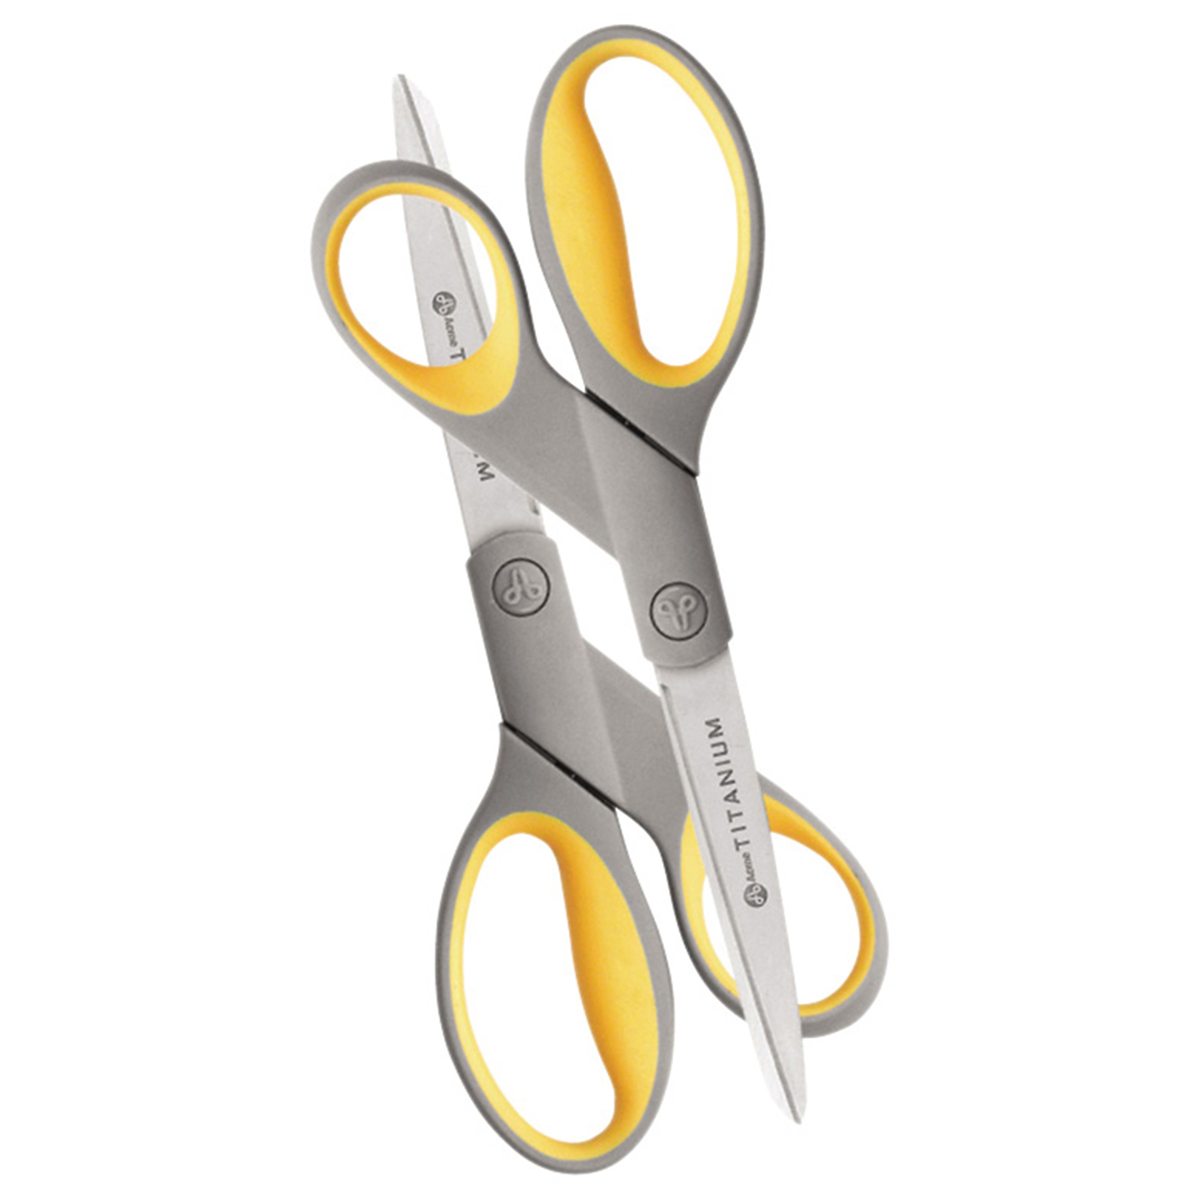  Westcott Titanium Scissors 2-Pack 